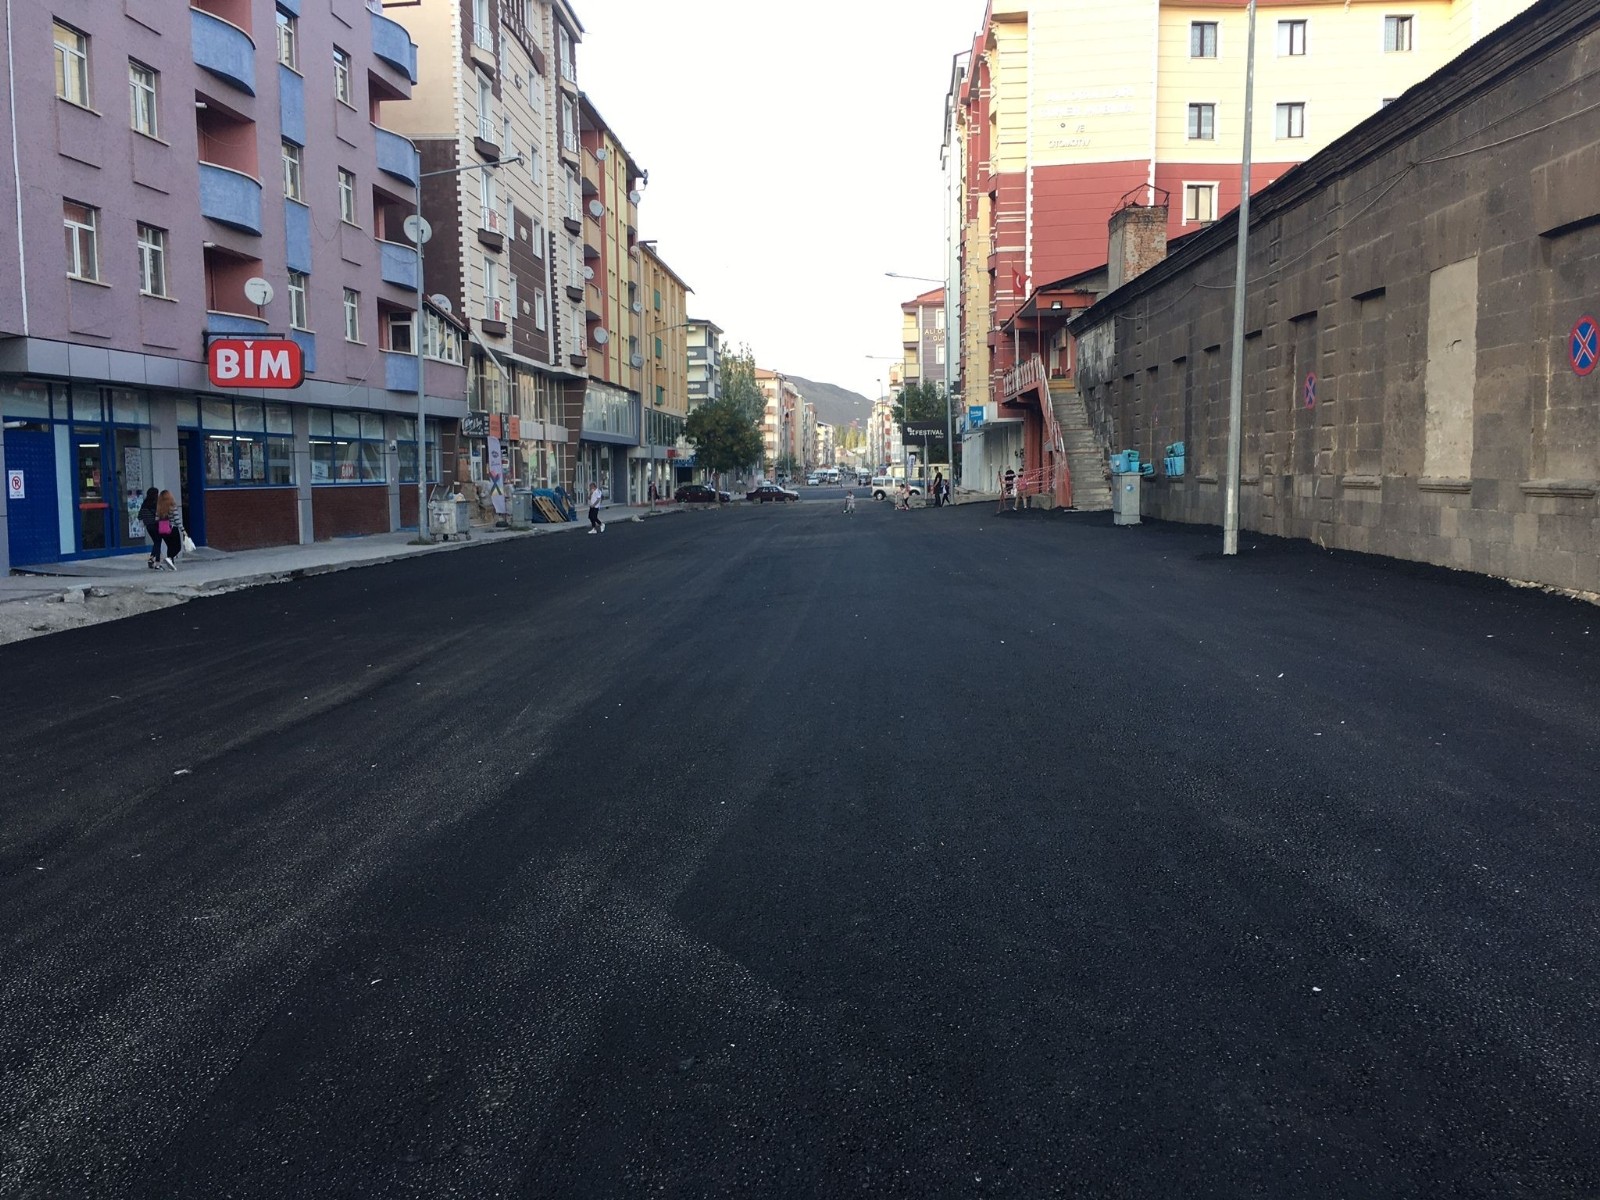 Kars’ta caddeler sıcak asfalt oldu